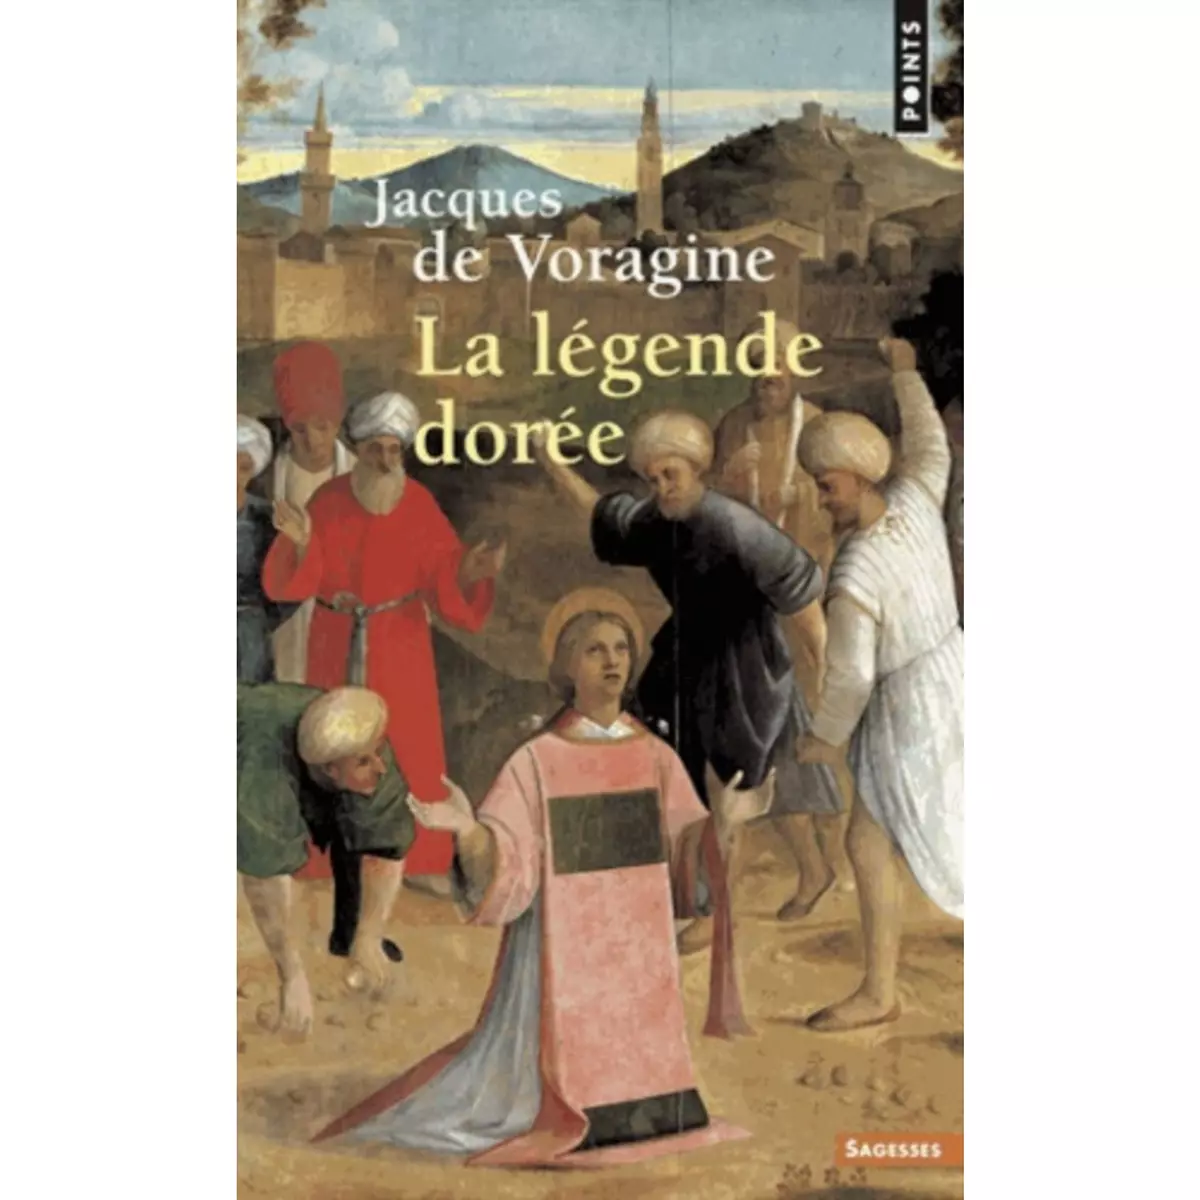  LA LEGENDE DOREE, Voragine Jacques de